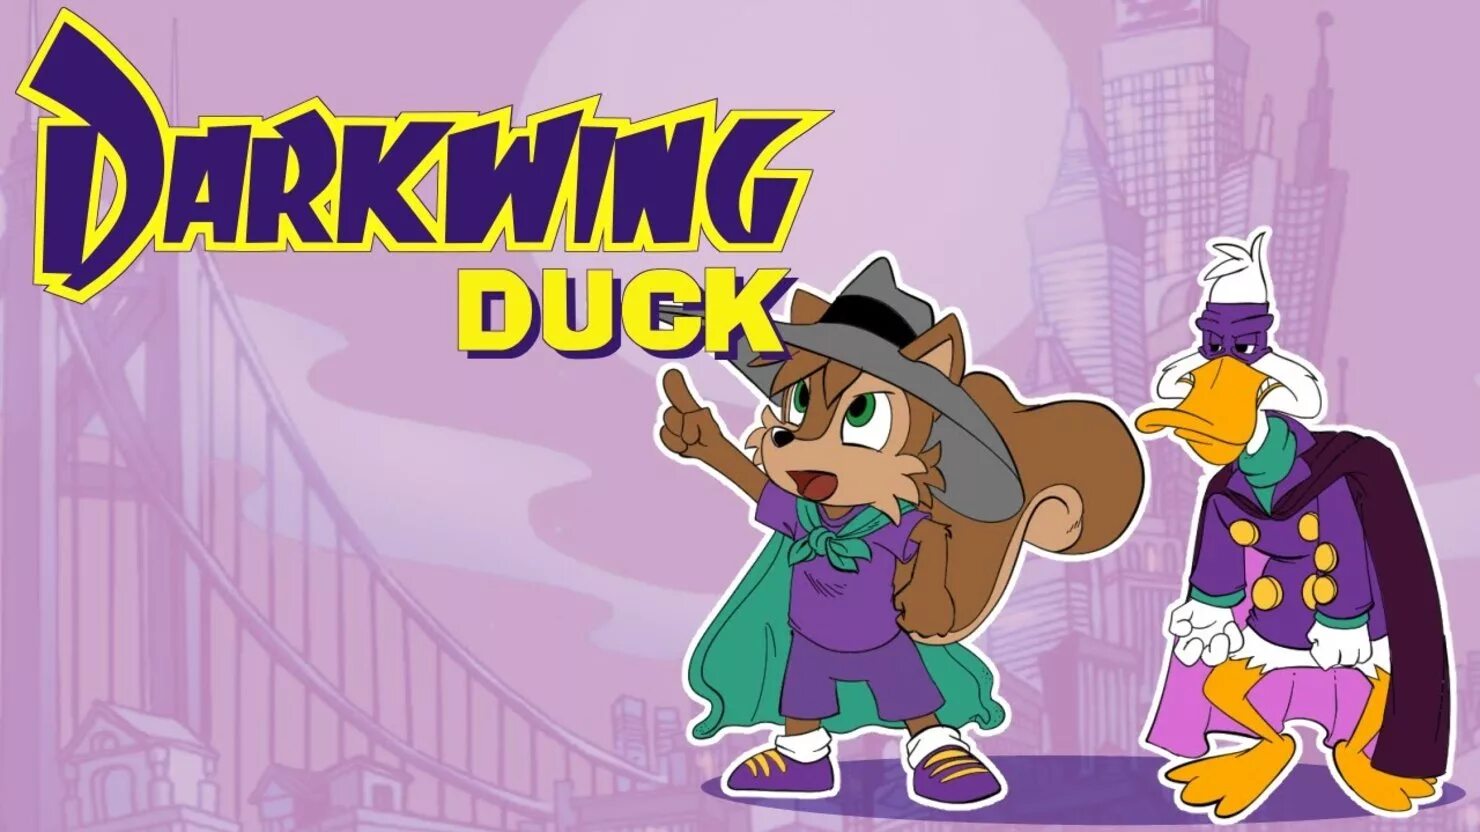 Darkwing duck capcom. Darkwing Duck 1992. Darkwing Duck игра. Darkwing Duck Remastered. Черный плащ ремейк игры.